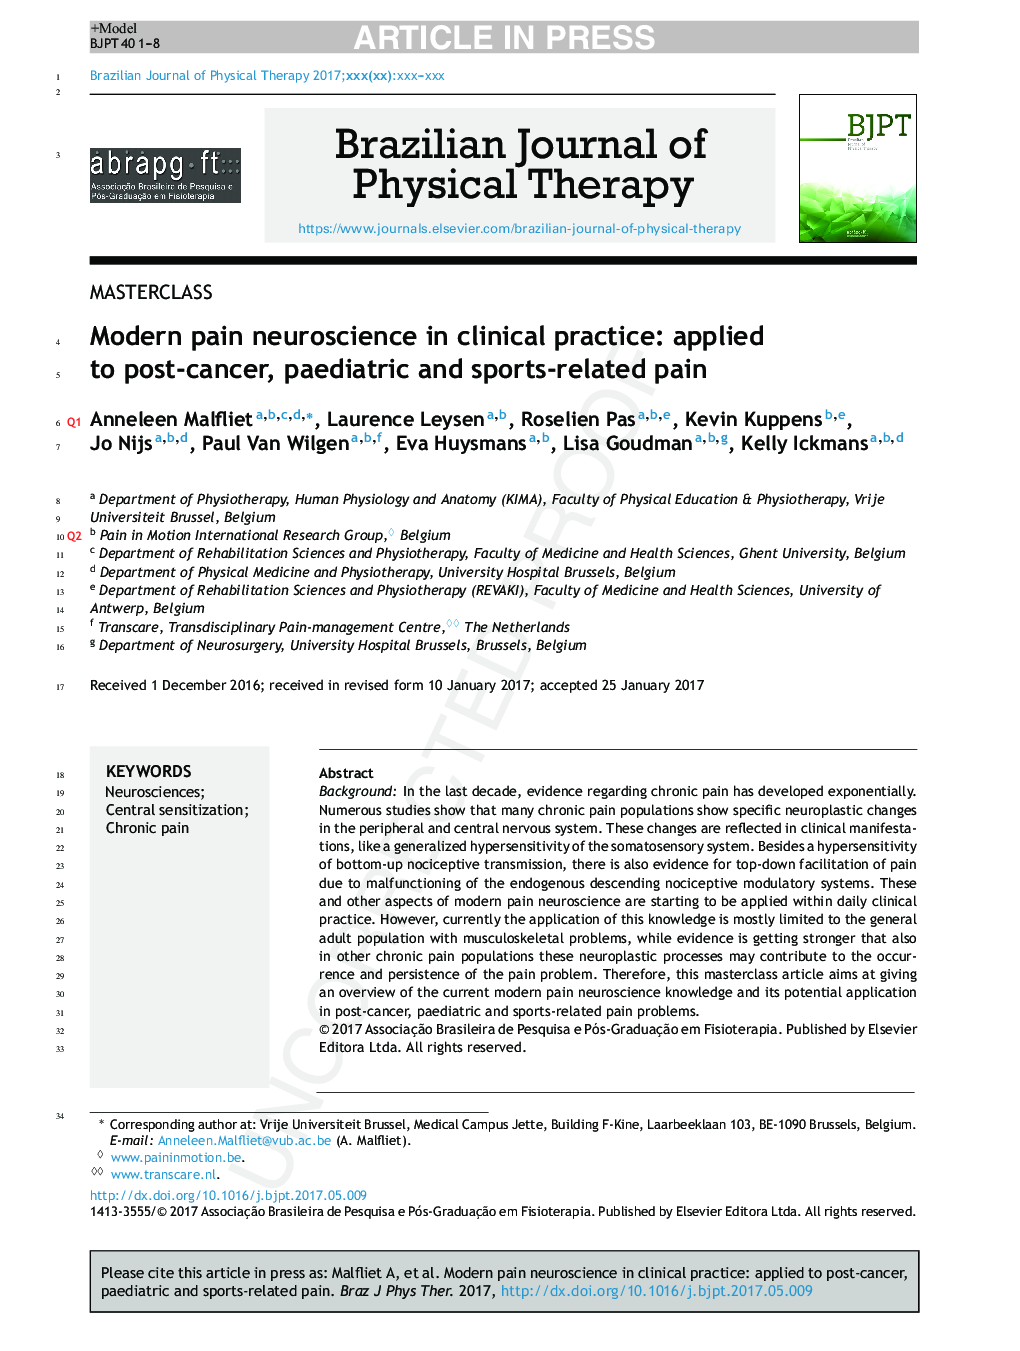 عصاره مدرن درد عصب شناسی در عمل بالینی: برای درد پس از سرطان، اطفال و ورزش استفاده می شود 